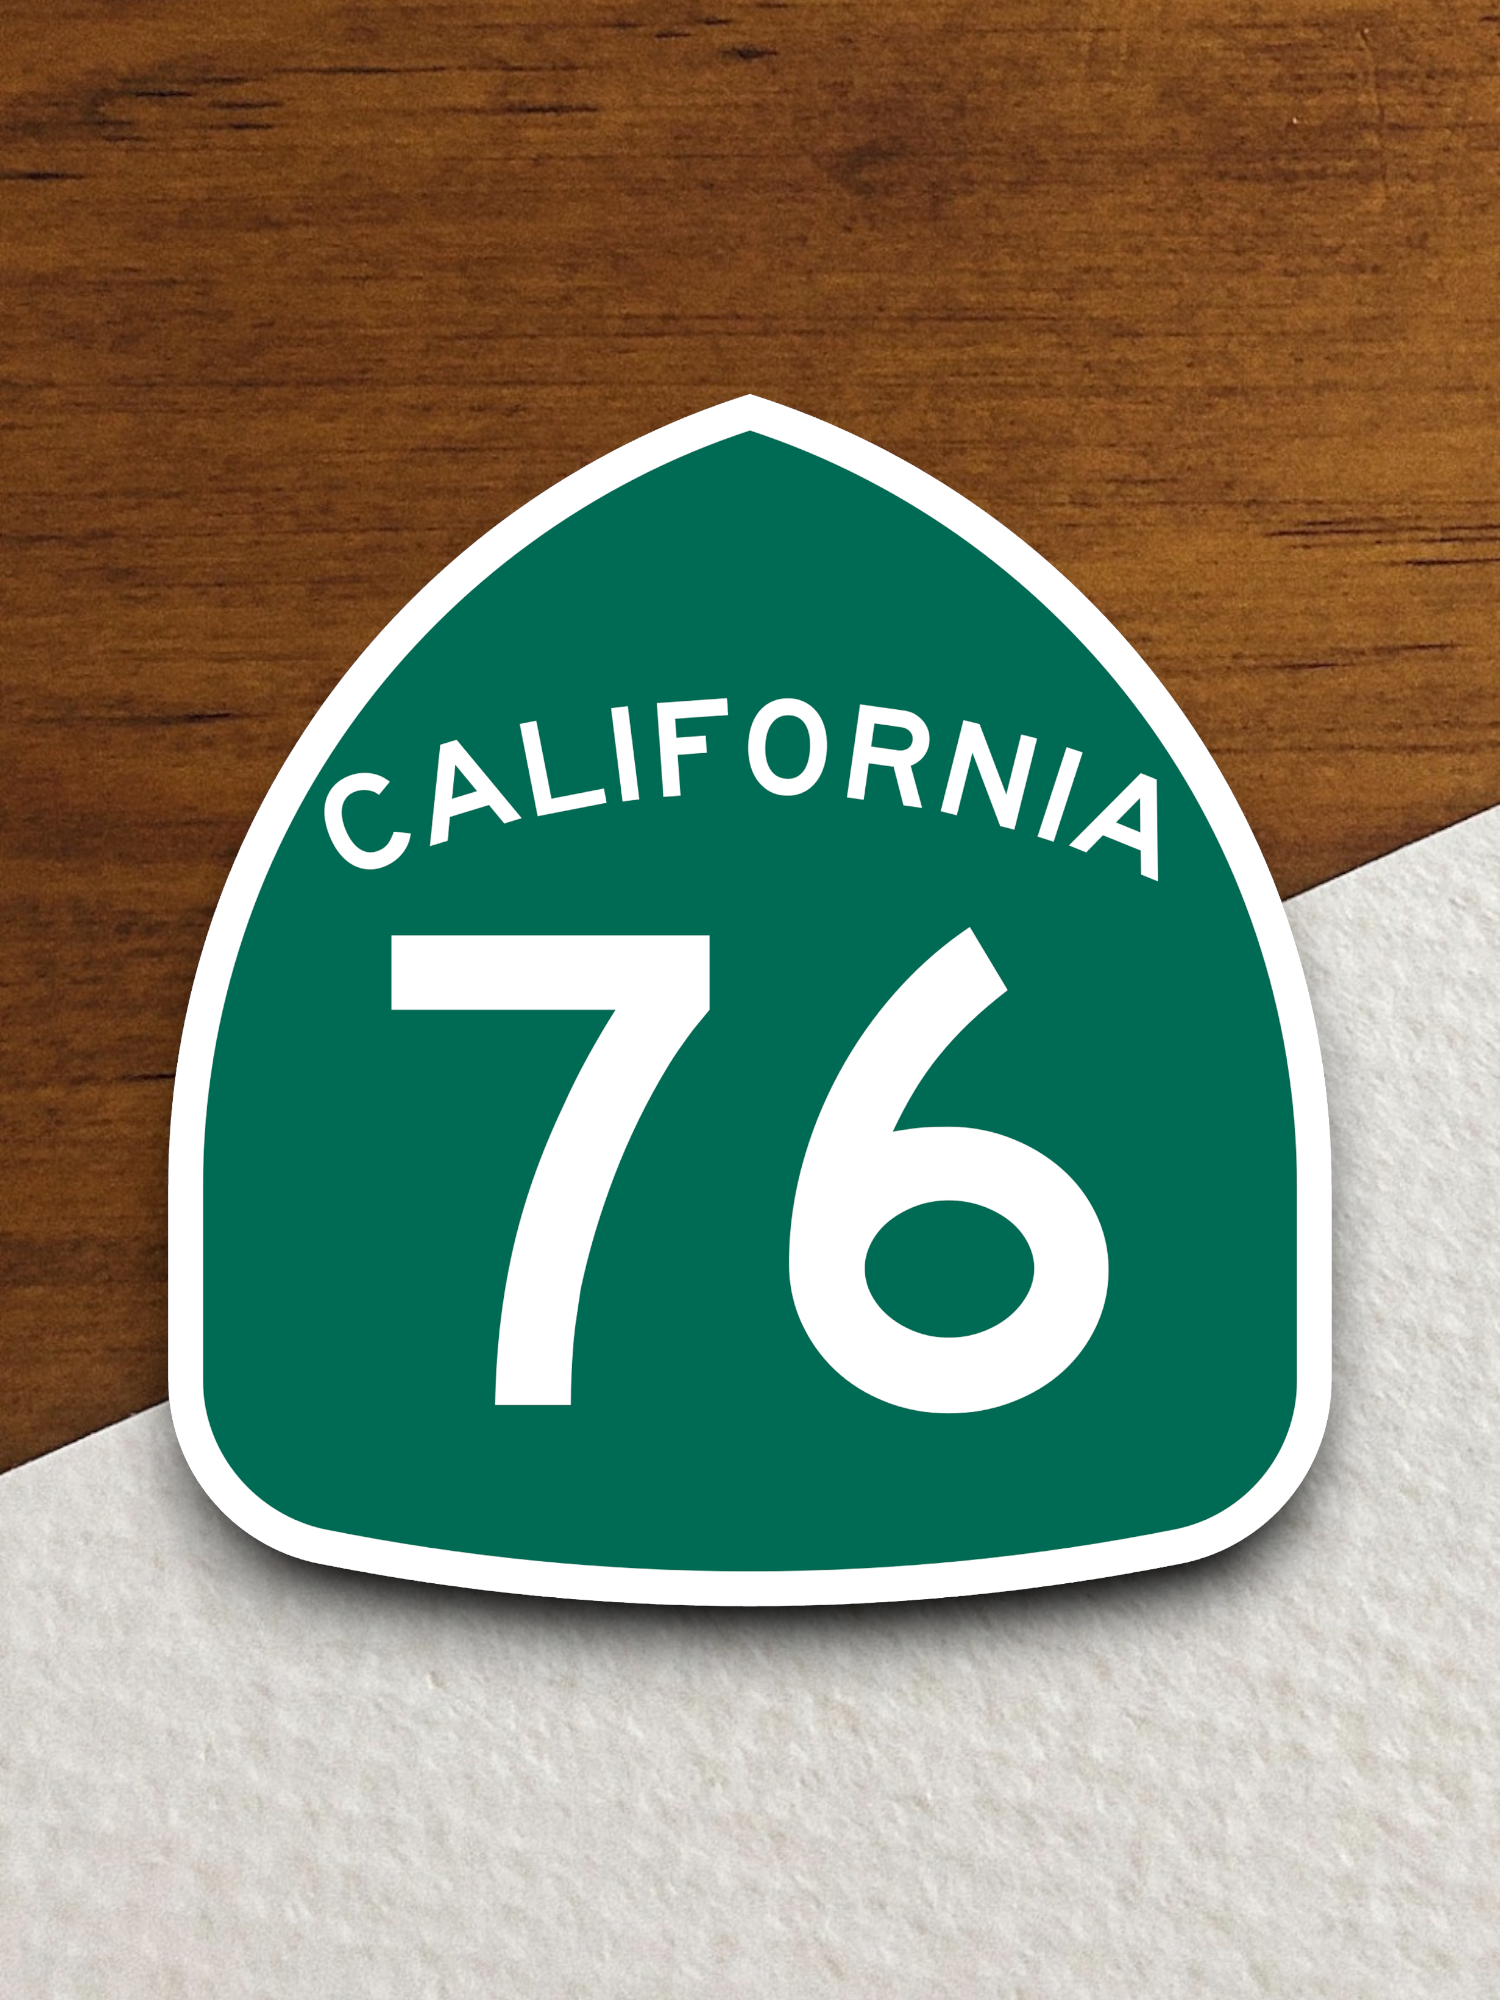 California State Route 76 Sticker